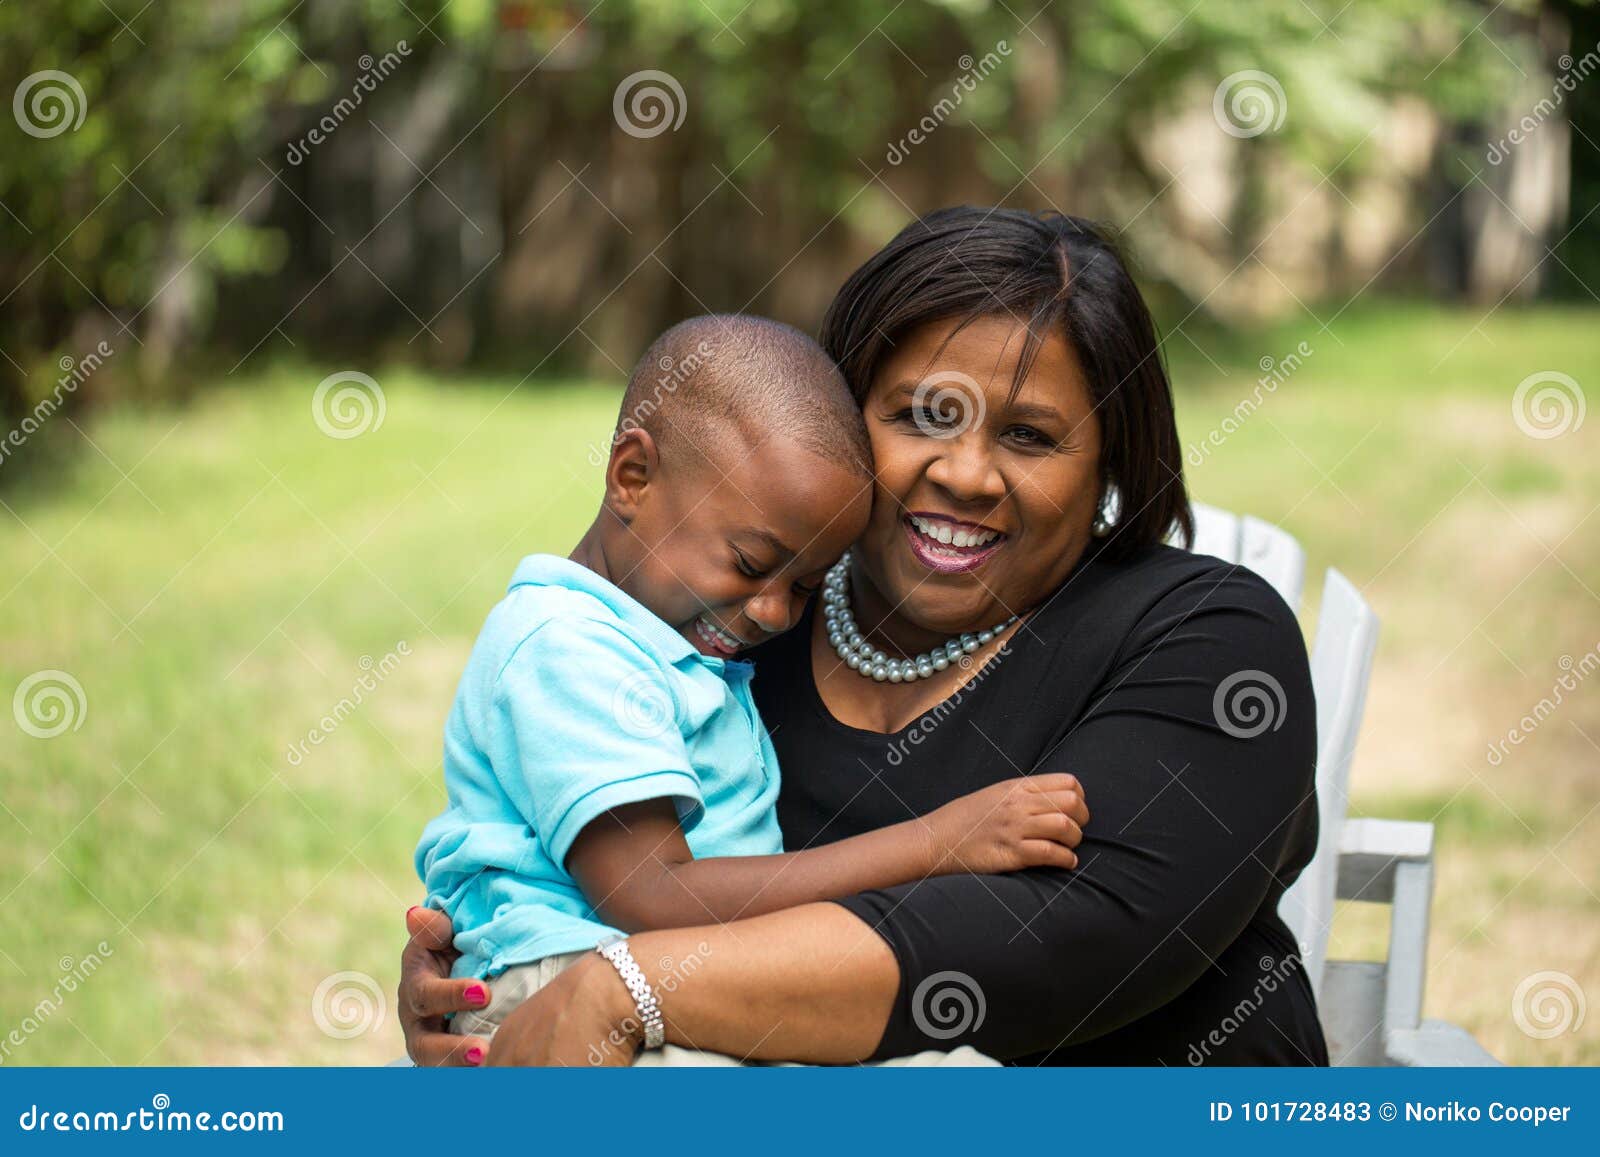 бабушка трахает ребенка фото 17